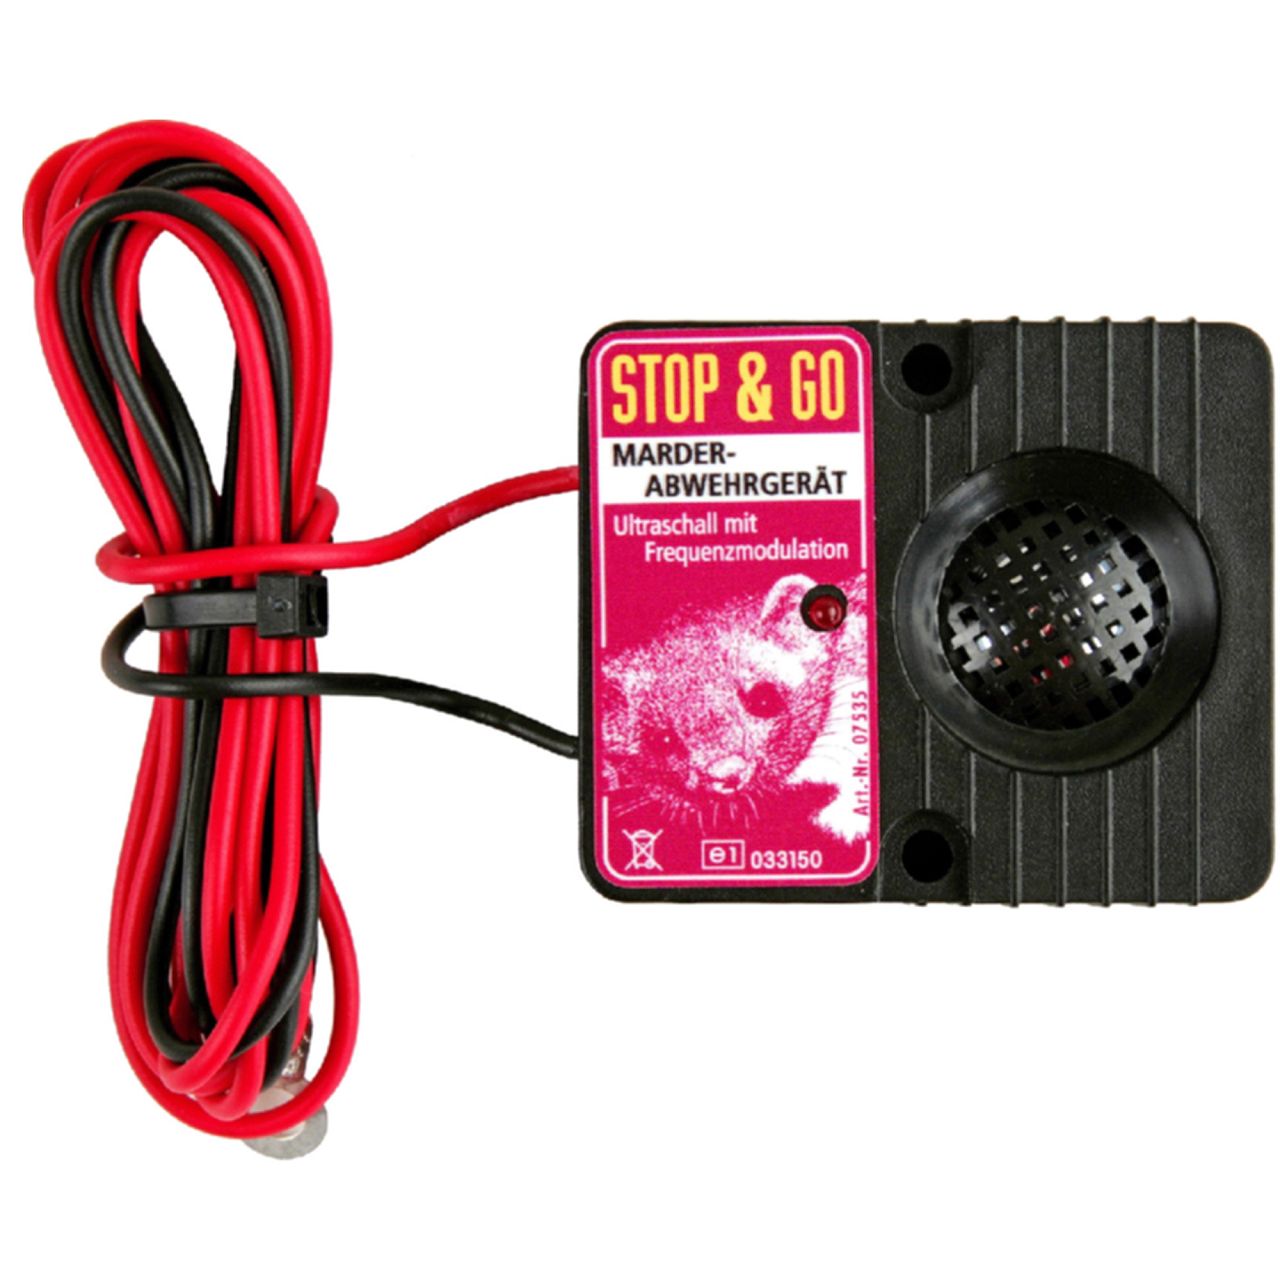 STOP & GO Ultraschall Marder-Abwehrgerät 07533 Batteriebetrieb